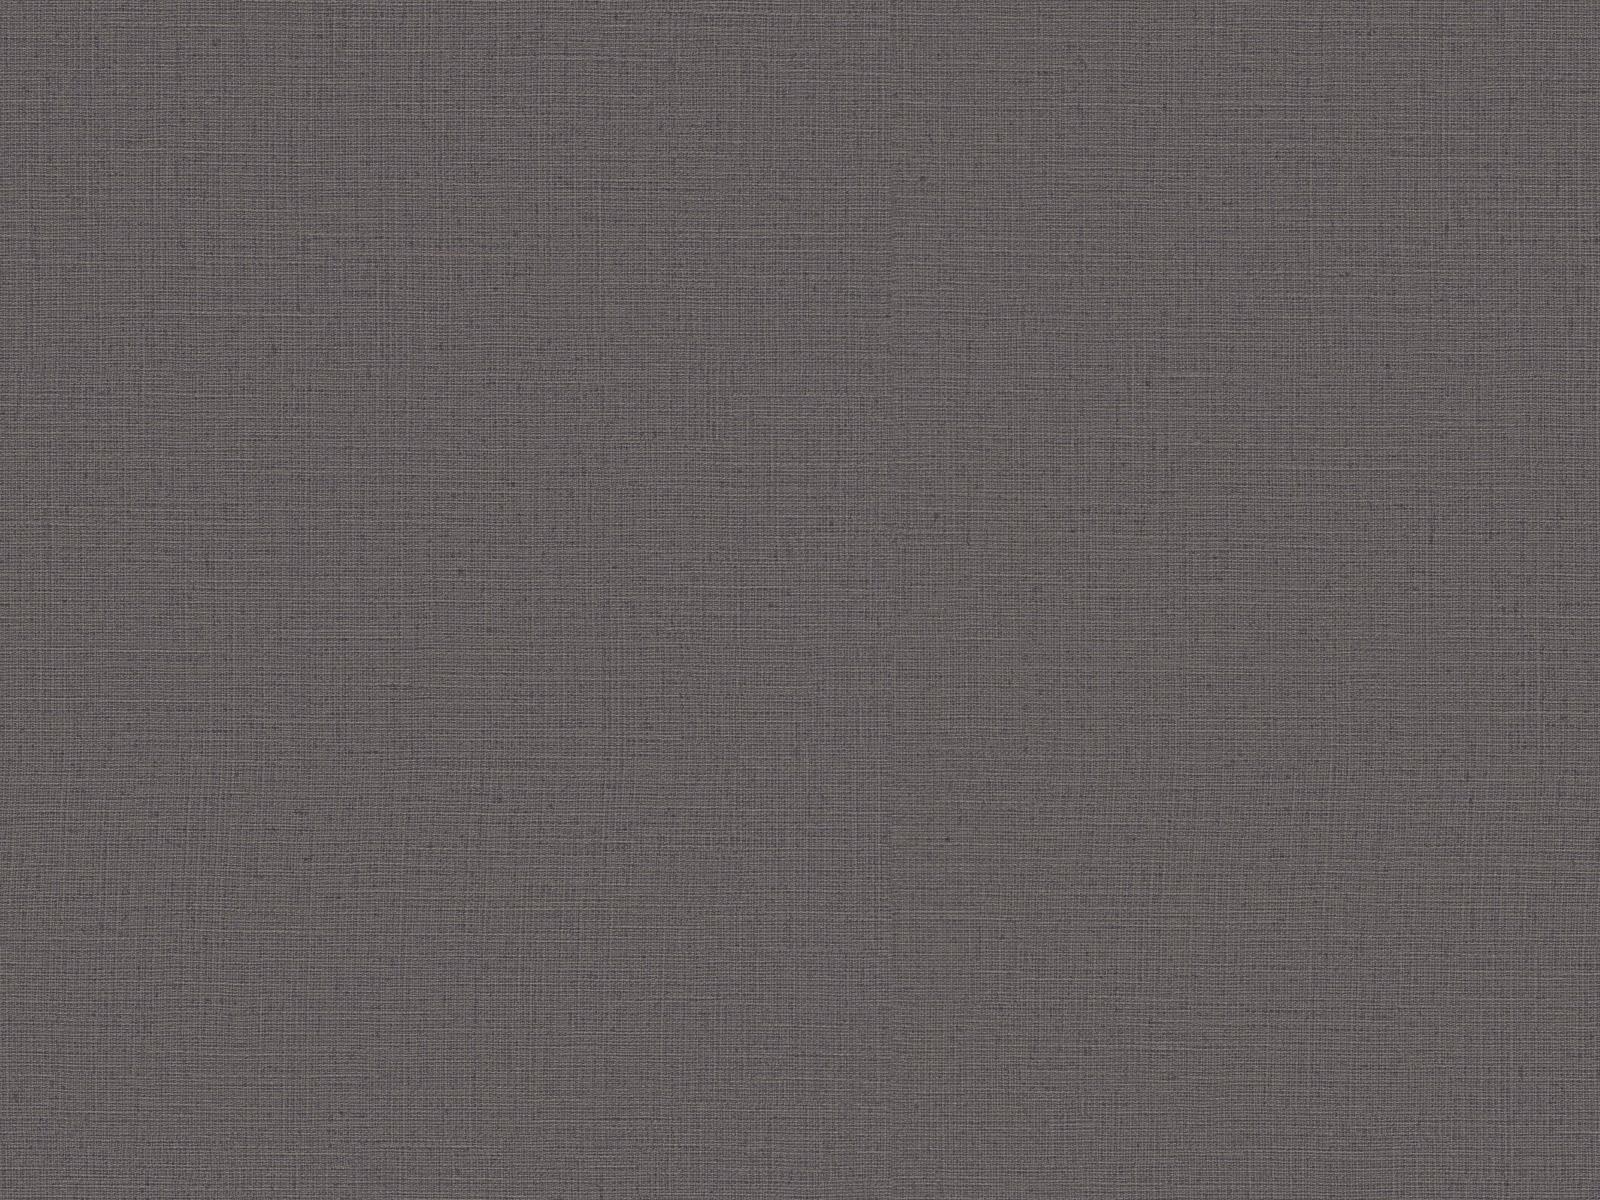 Vliesová tapeta s prirodzenou textilnou štruktúrou v tmavo-hnedej, ER-601639